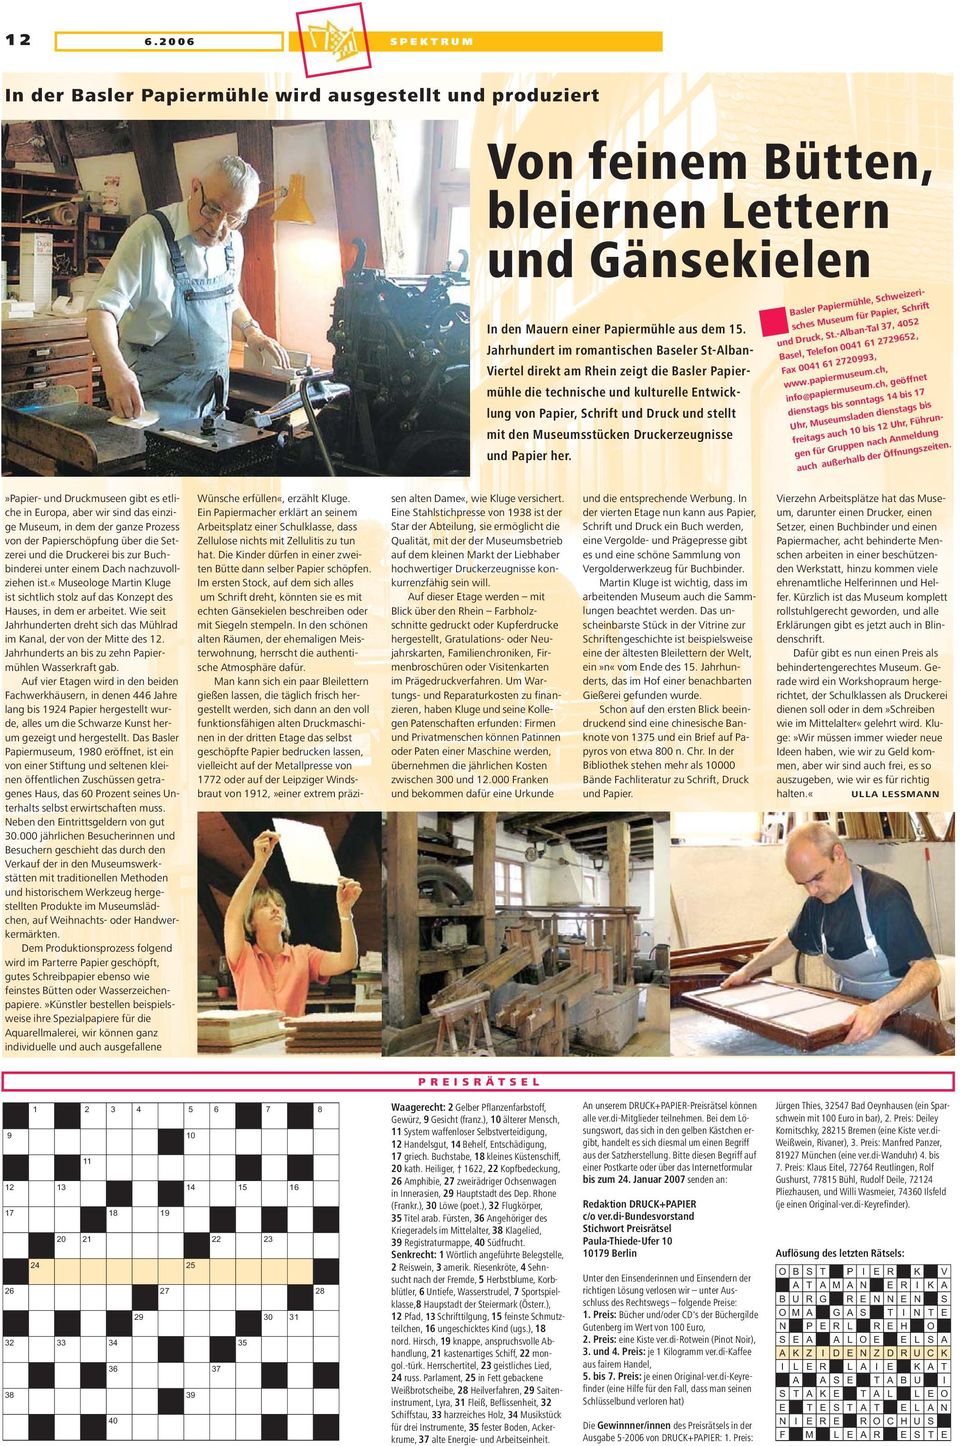 Museumsstücken Druckerzeugnisse und Papier her. Basler Papiermühle, Schweizerisches Museum für Papier, Schrift und Druck, St.